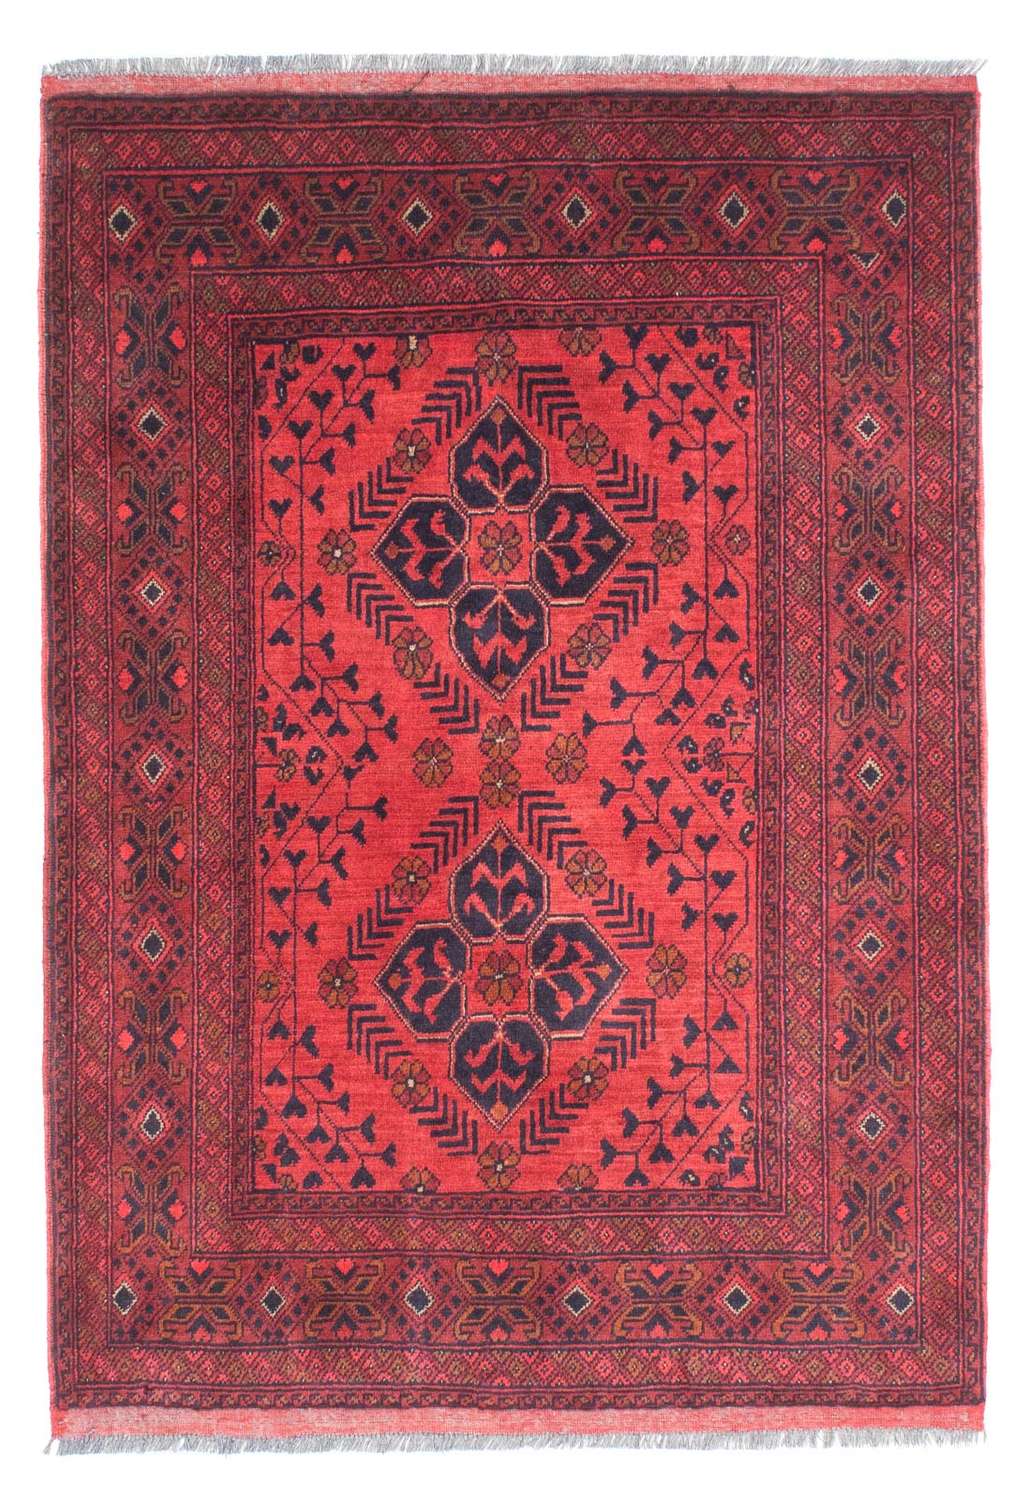 Afghanske tepper - Kunduz - 146 x 104 cm - mørk rød